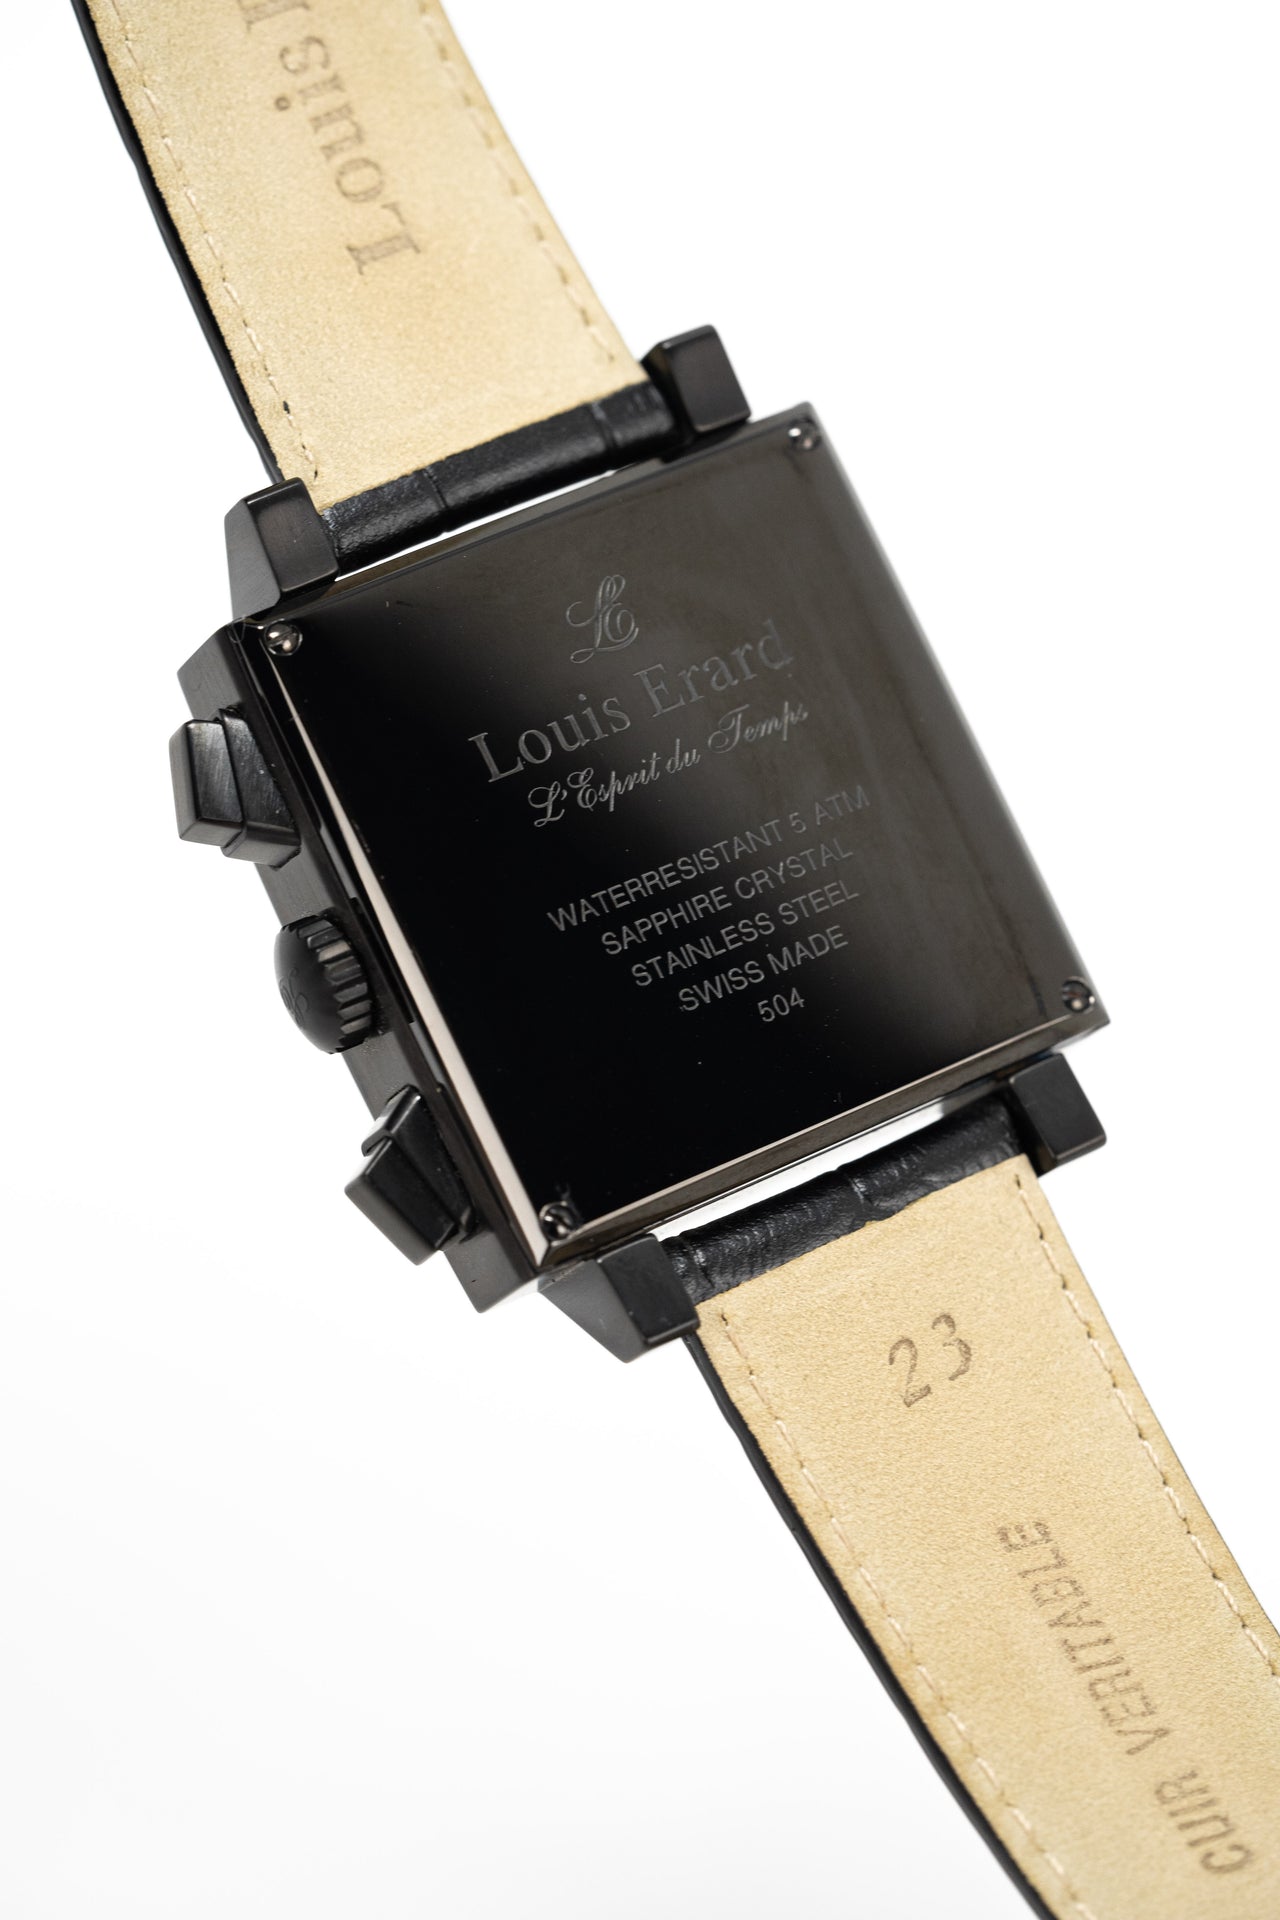 Louis Erard Watch Men's Black PVD Square Automatic Chronograph 77504AN02.BDC34